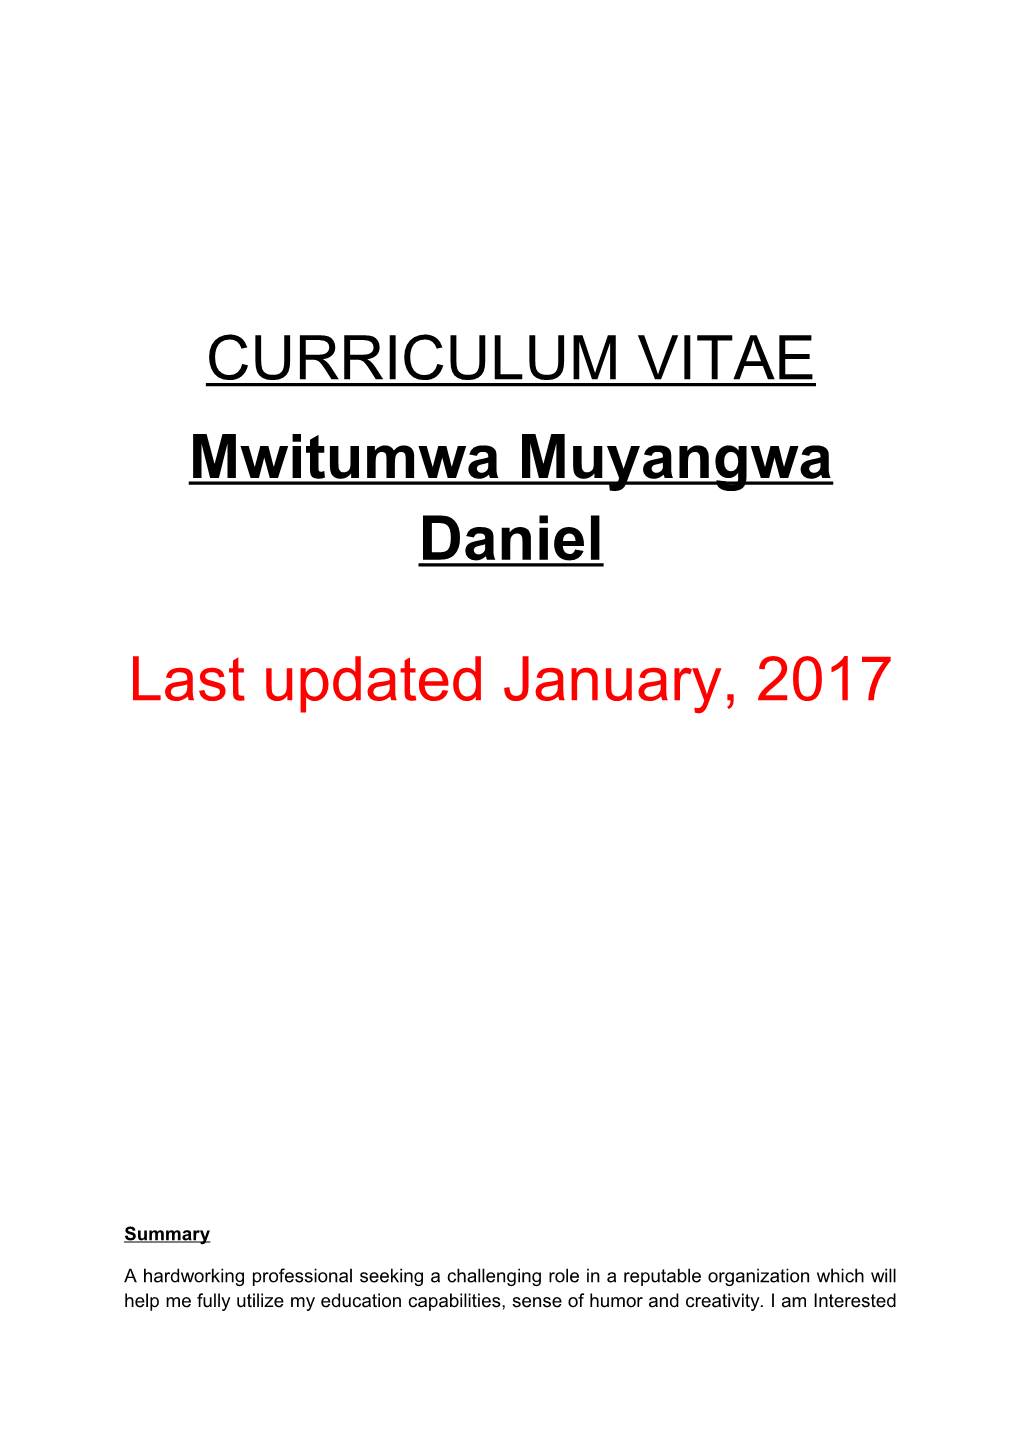 Mwitumwa Muyangwa Daniel